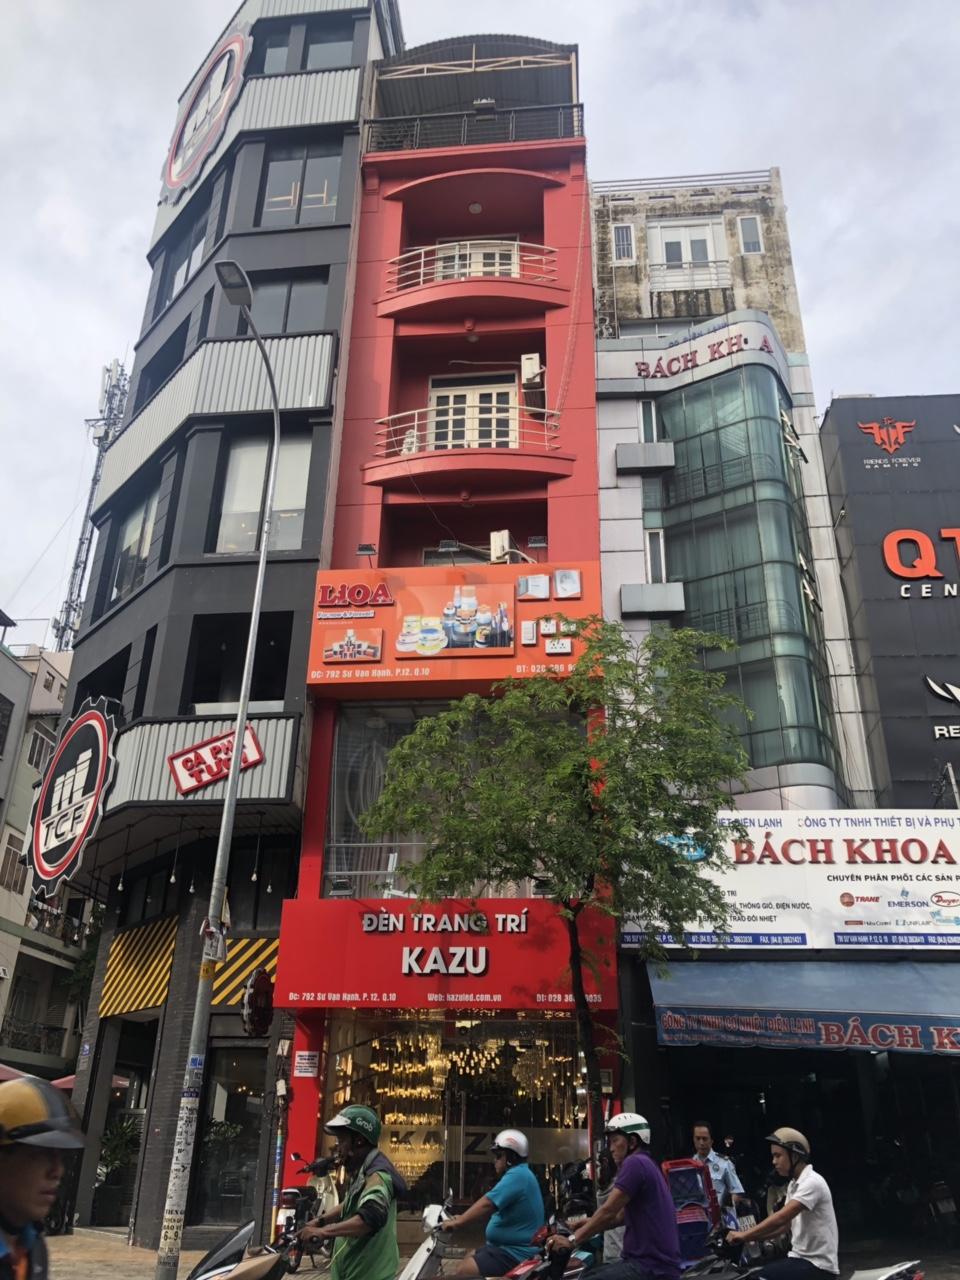 Bán nhà đường Hoa Lan Quận Phú Nhuận giá rẻ nhất 12 x 21 giá rẻ nhất hiện nay